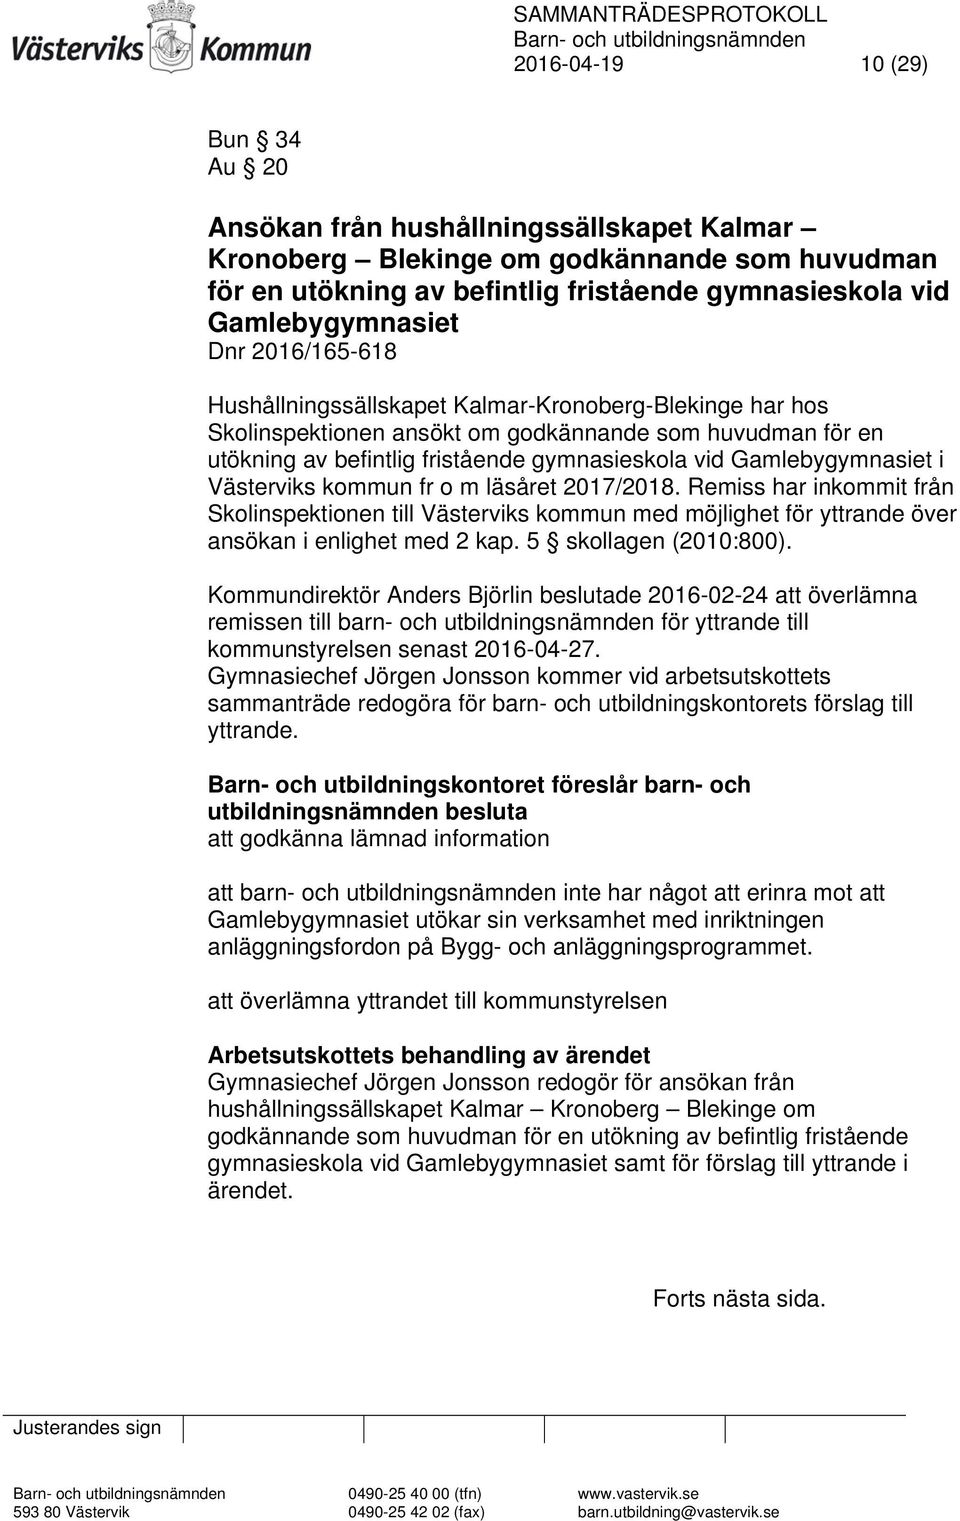 Gamlebygymnasiet i Västerviks kommun fr o m läsåret 2017/2018. Remiss har inkommit från Skolinspektionen till Västerviks kommun med möjlighet för yttrande över ansökan i enlighet med 2 kap.